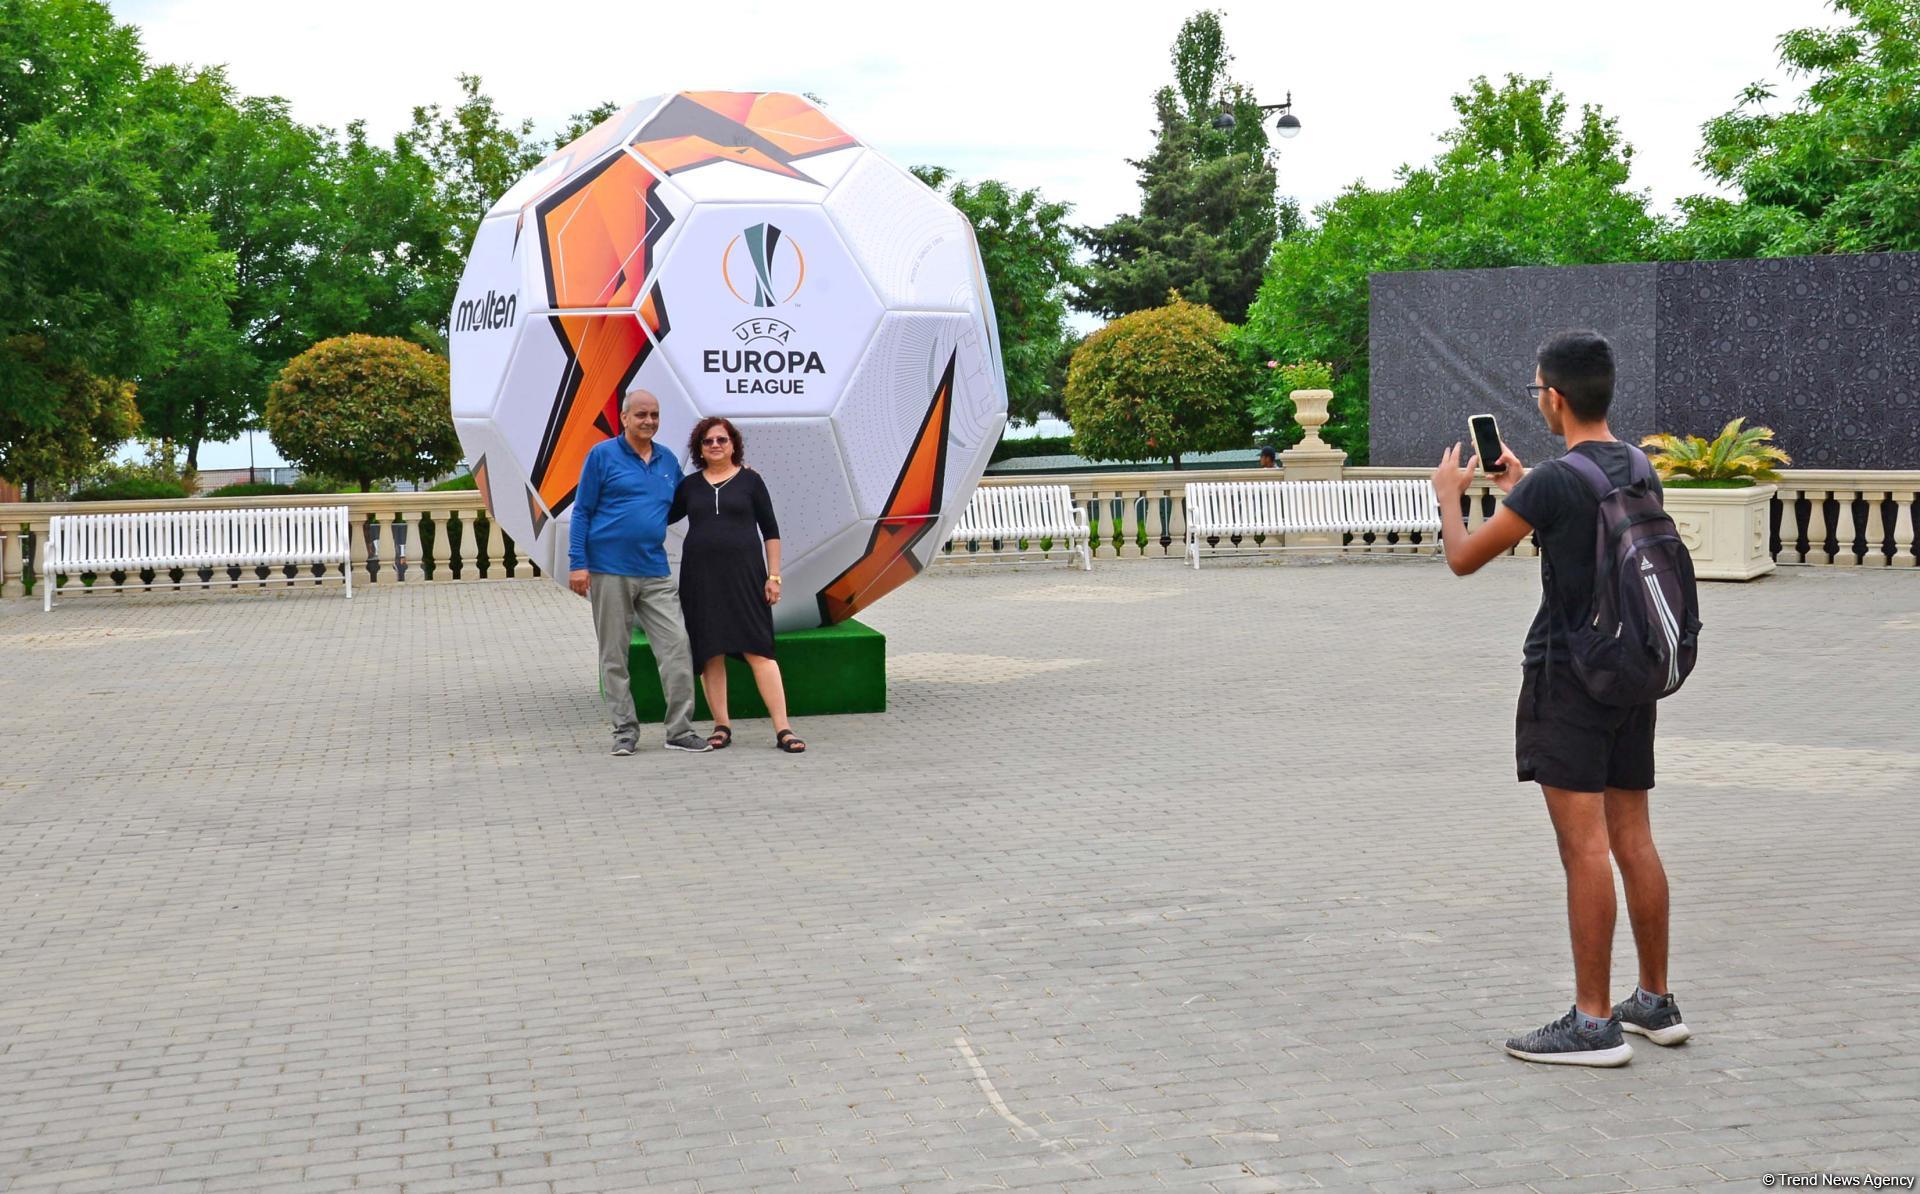 Остаются считанные часы до финала Лиги Европы УЕФА в Баку (ФОТО)